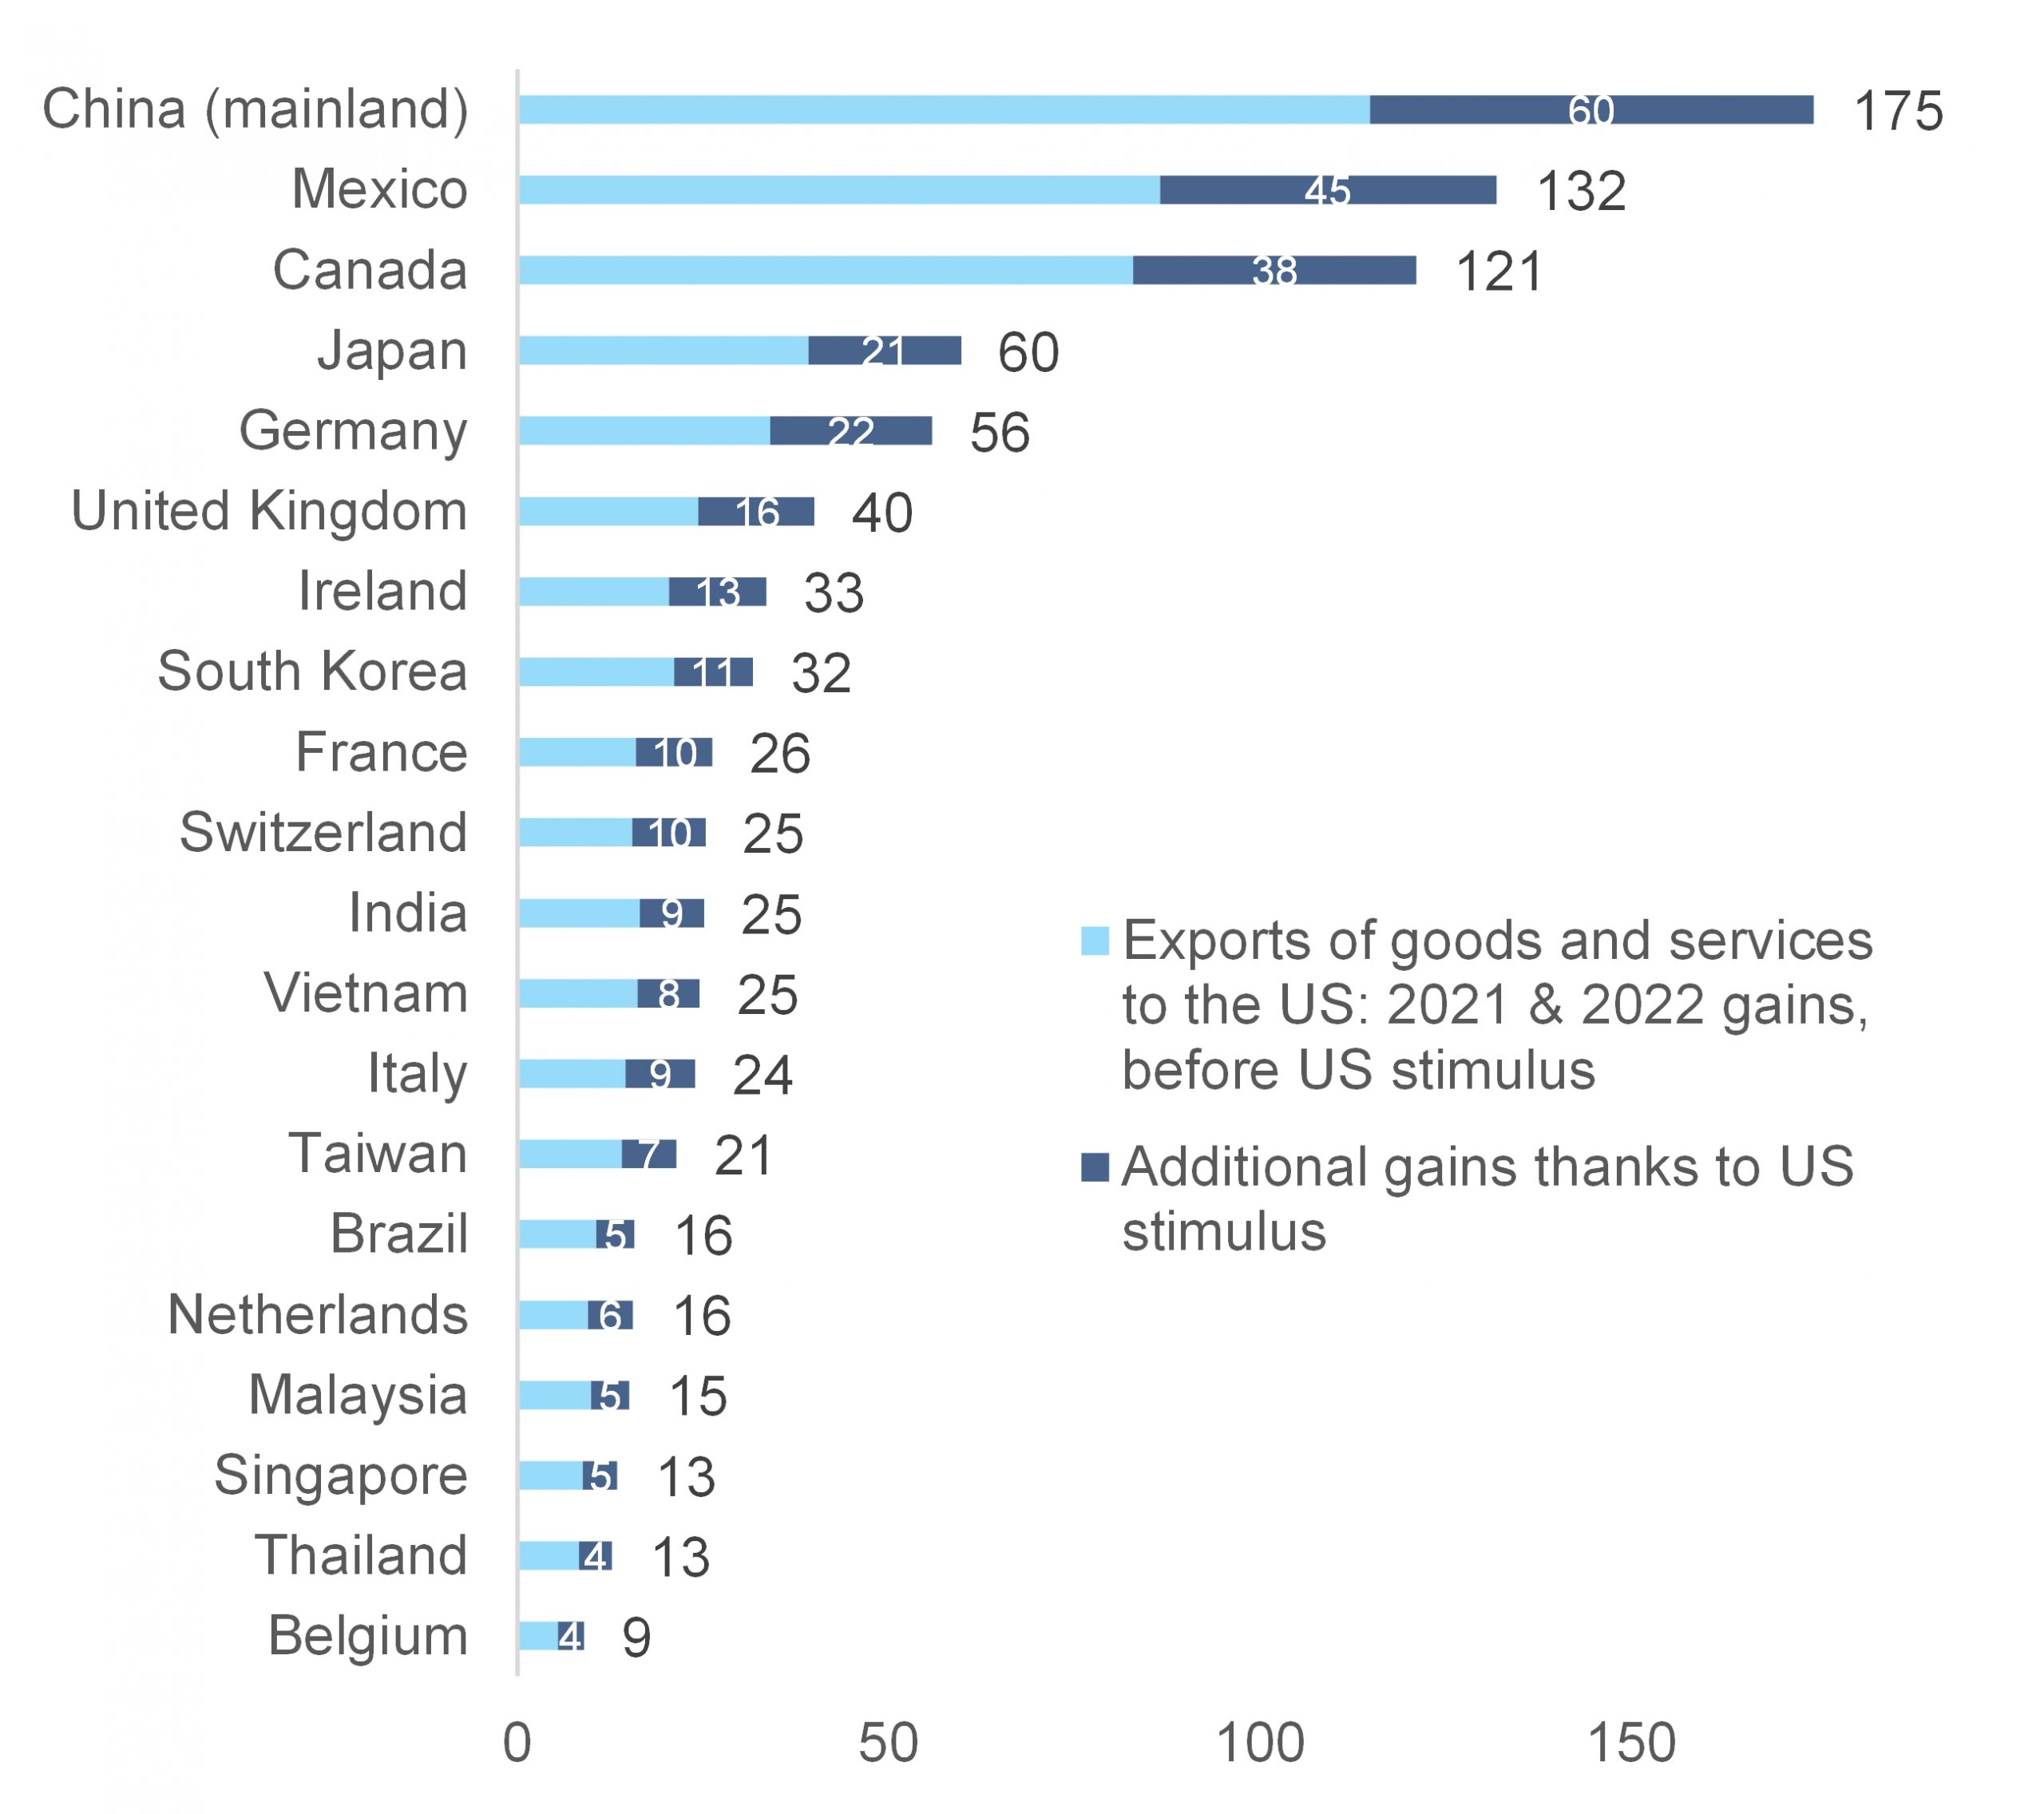 Ganhos nas exportações de bens e serviços em 2021-2022, por país (US$ bilhões)